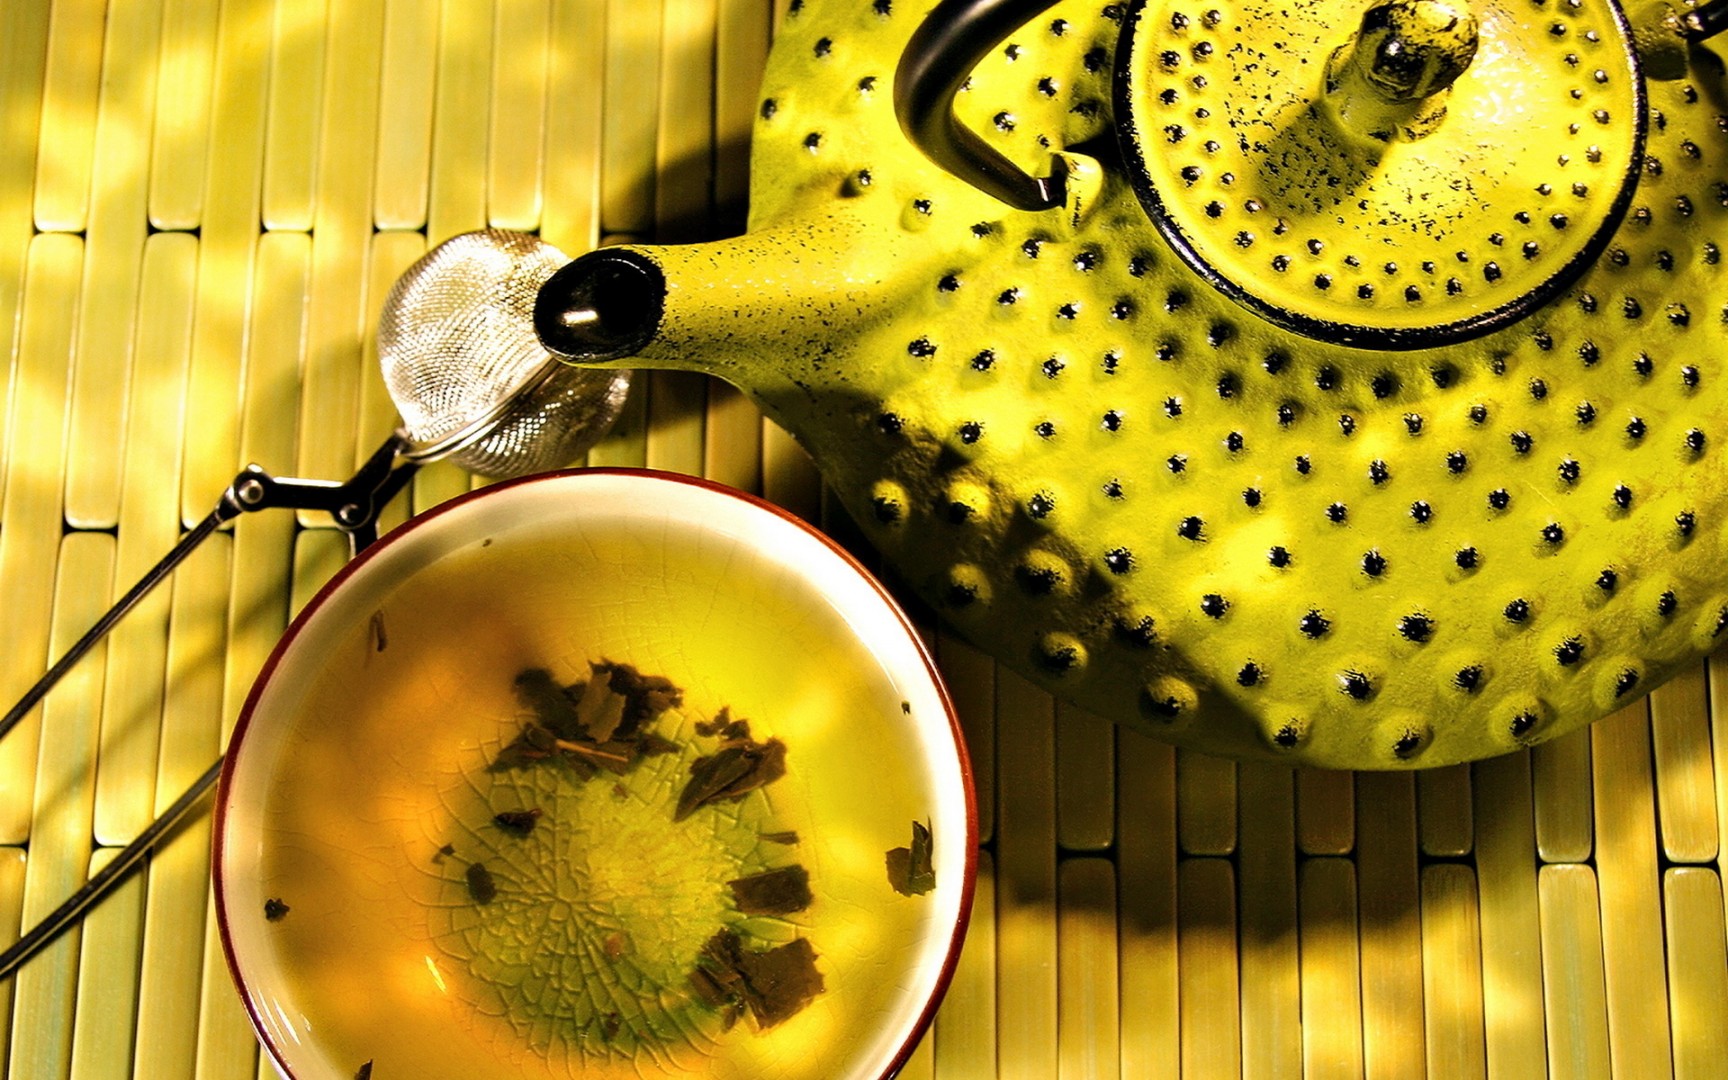 Желтый чай